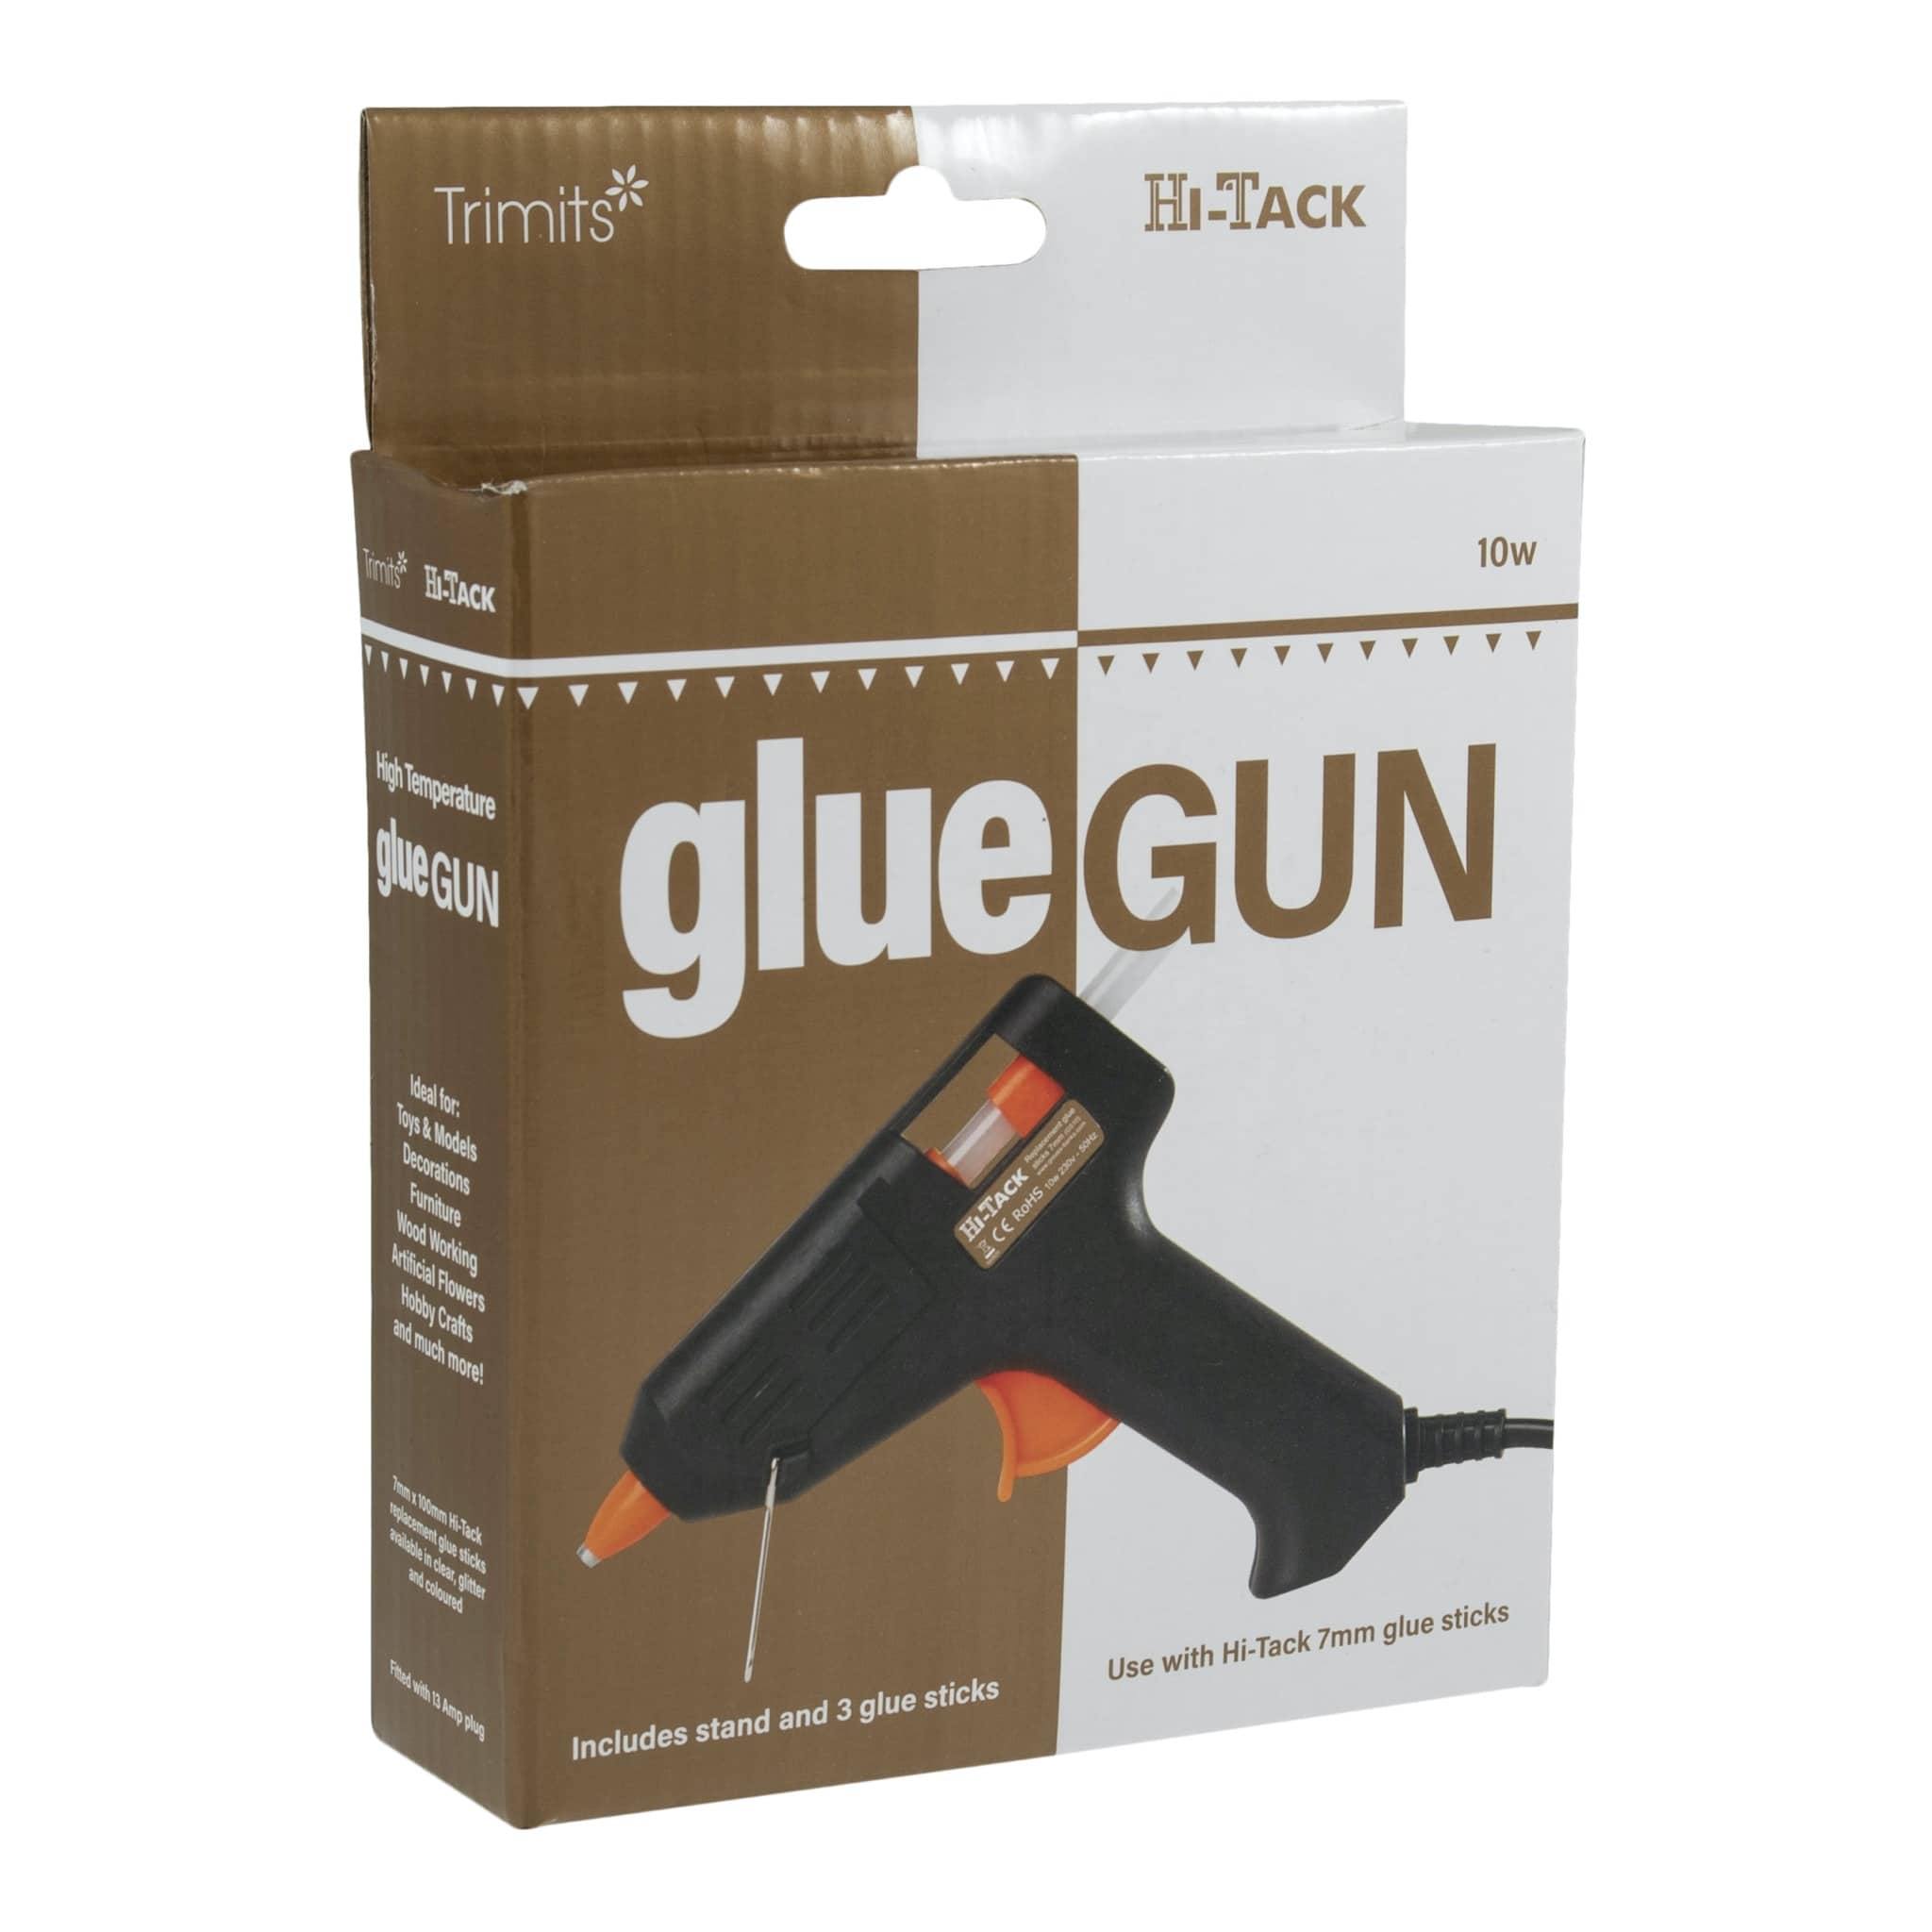 Hi-Tack Glue Gun Mini 10w